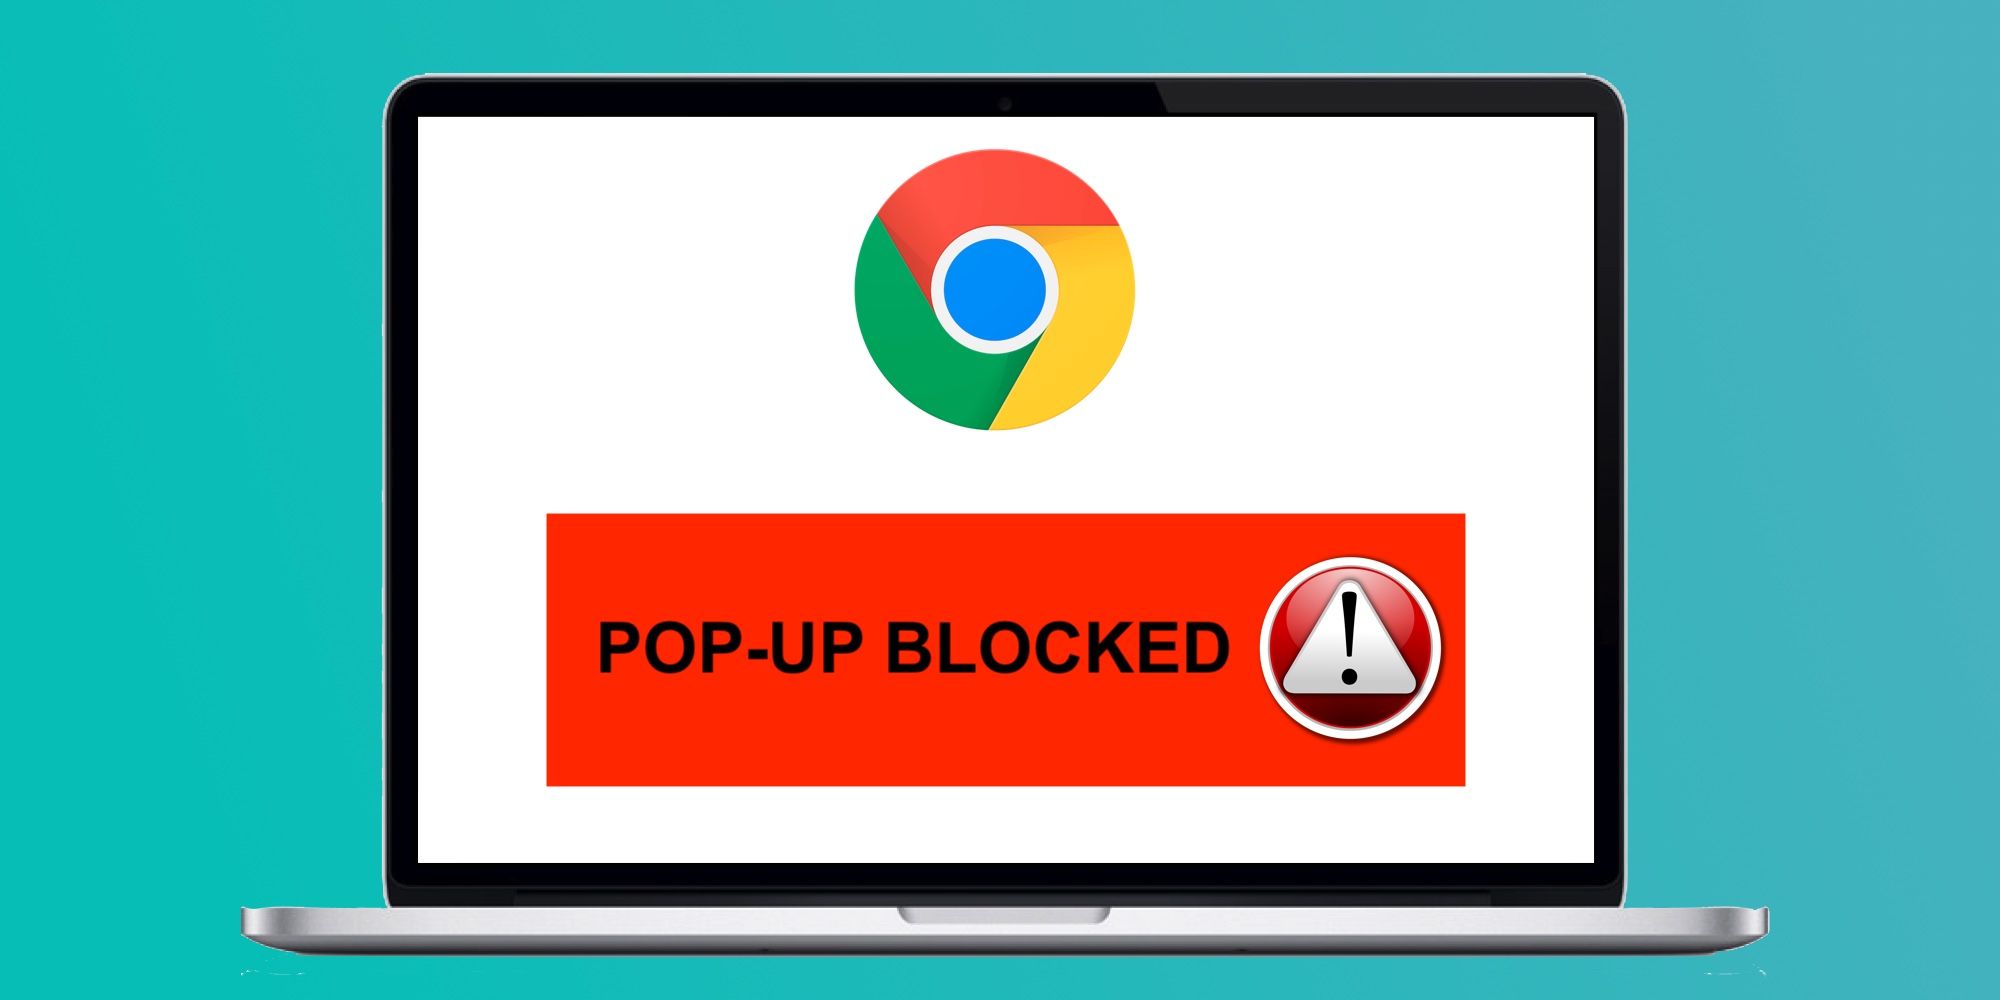 Nybegynder læder hvidløg How To Turn Off The Pop-Up Blocker In Google Chrome